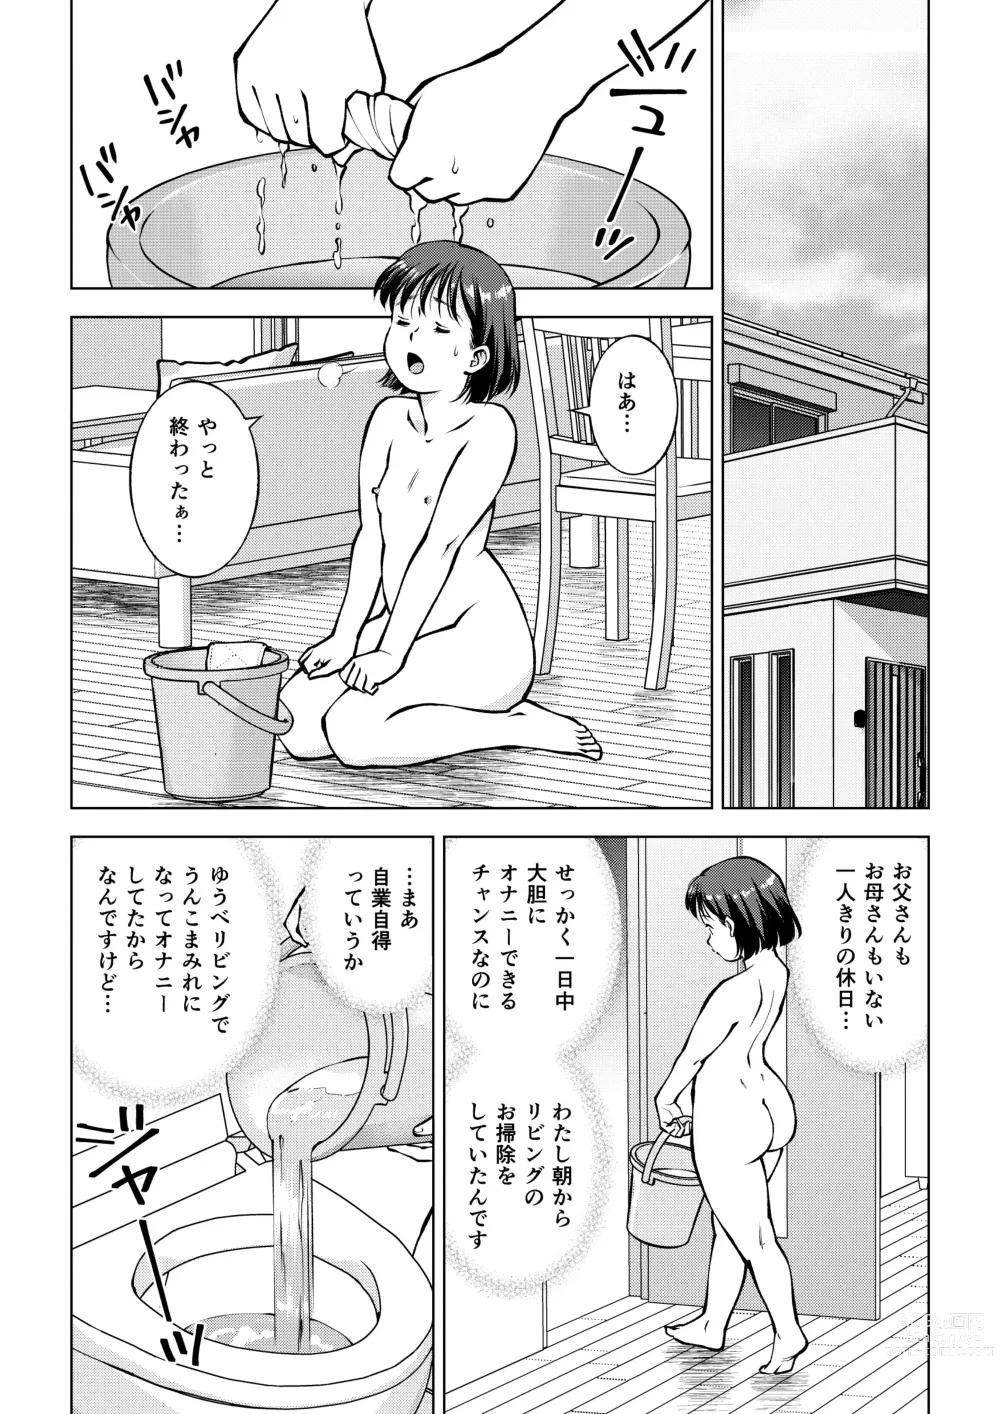 Page 2 of doujinshi Okada-san no Sanran